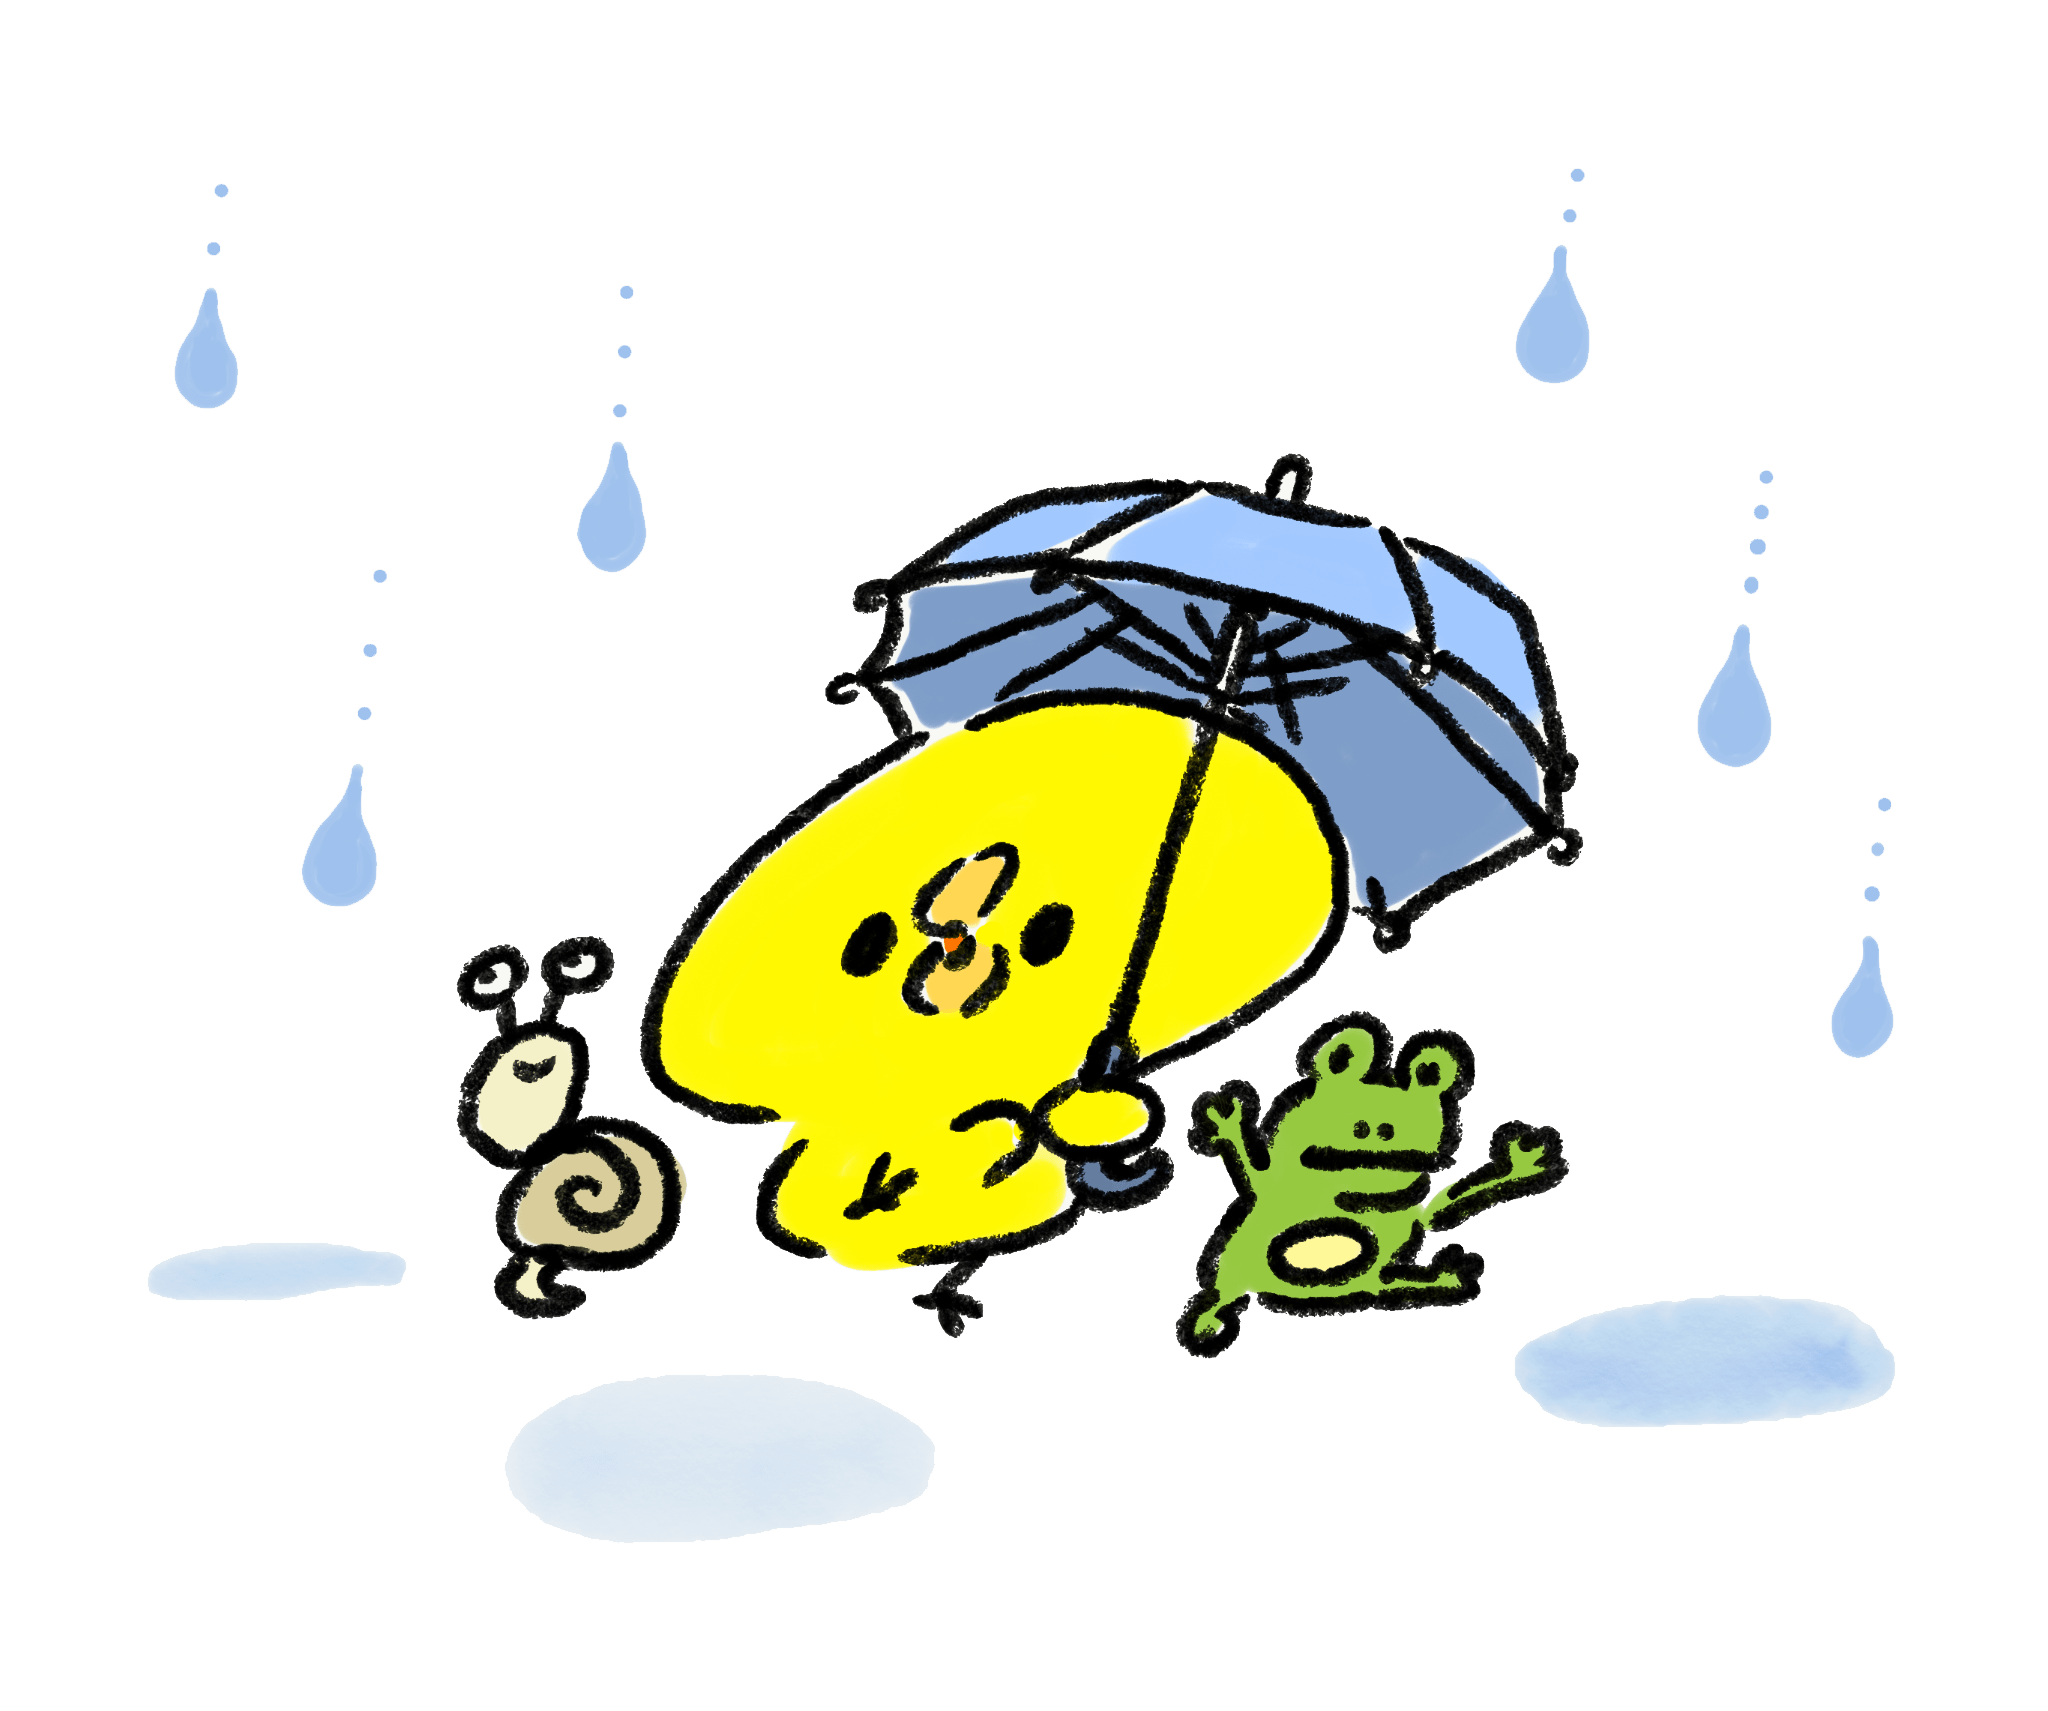 雨降りの中おどるひよことカエルとカタツムリ